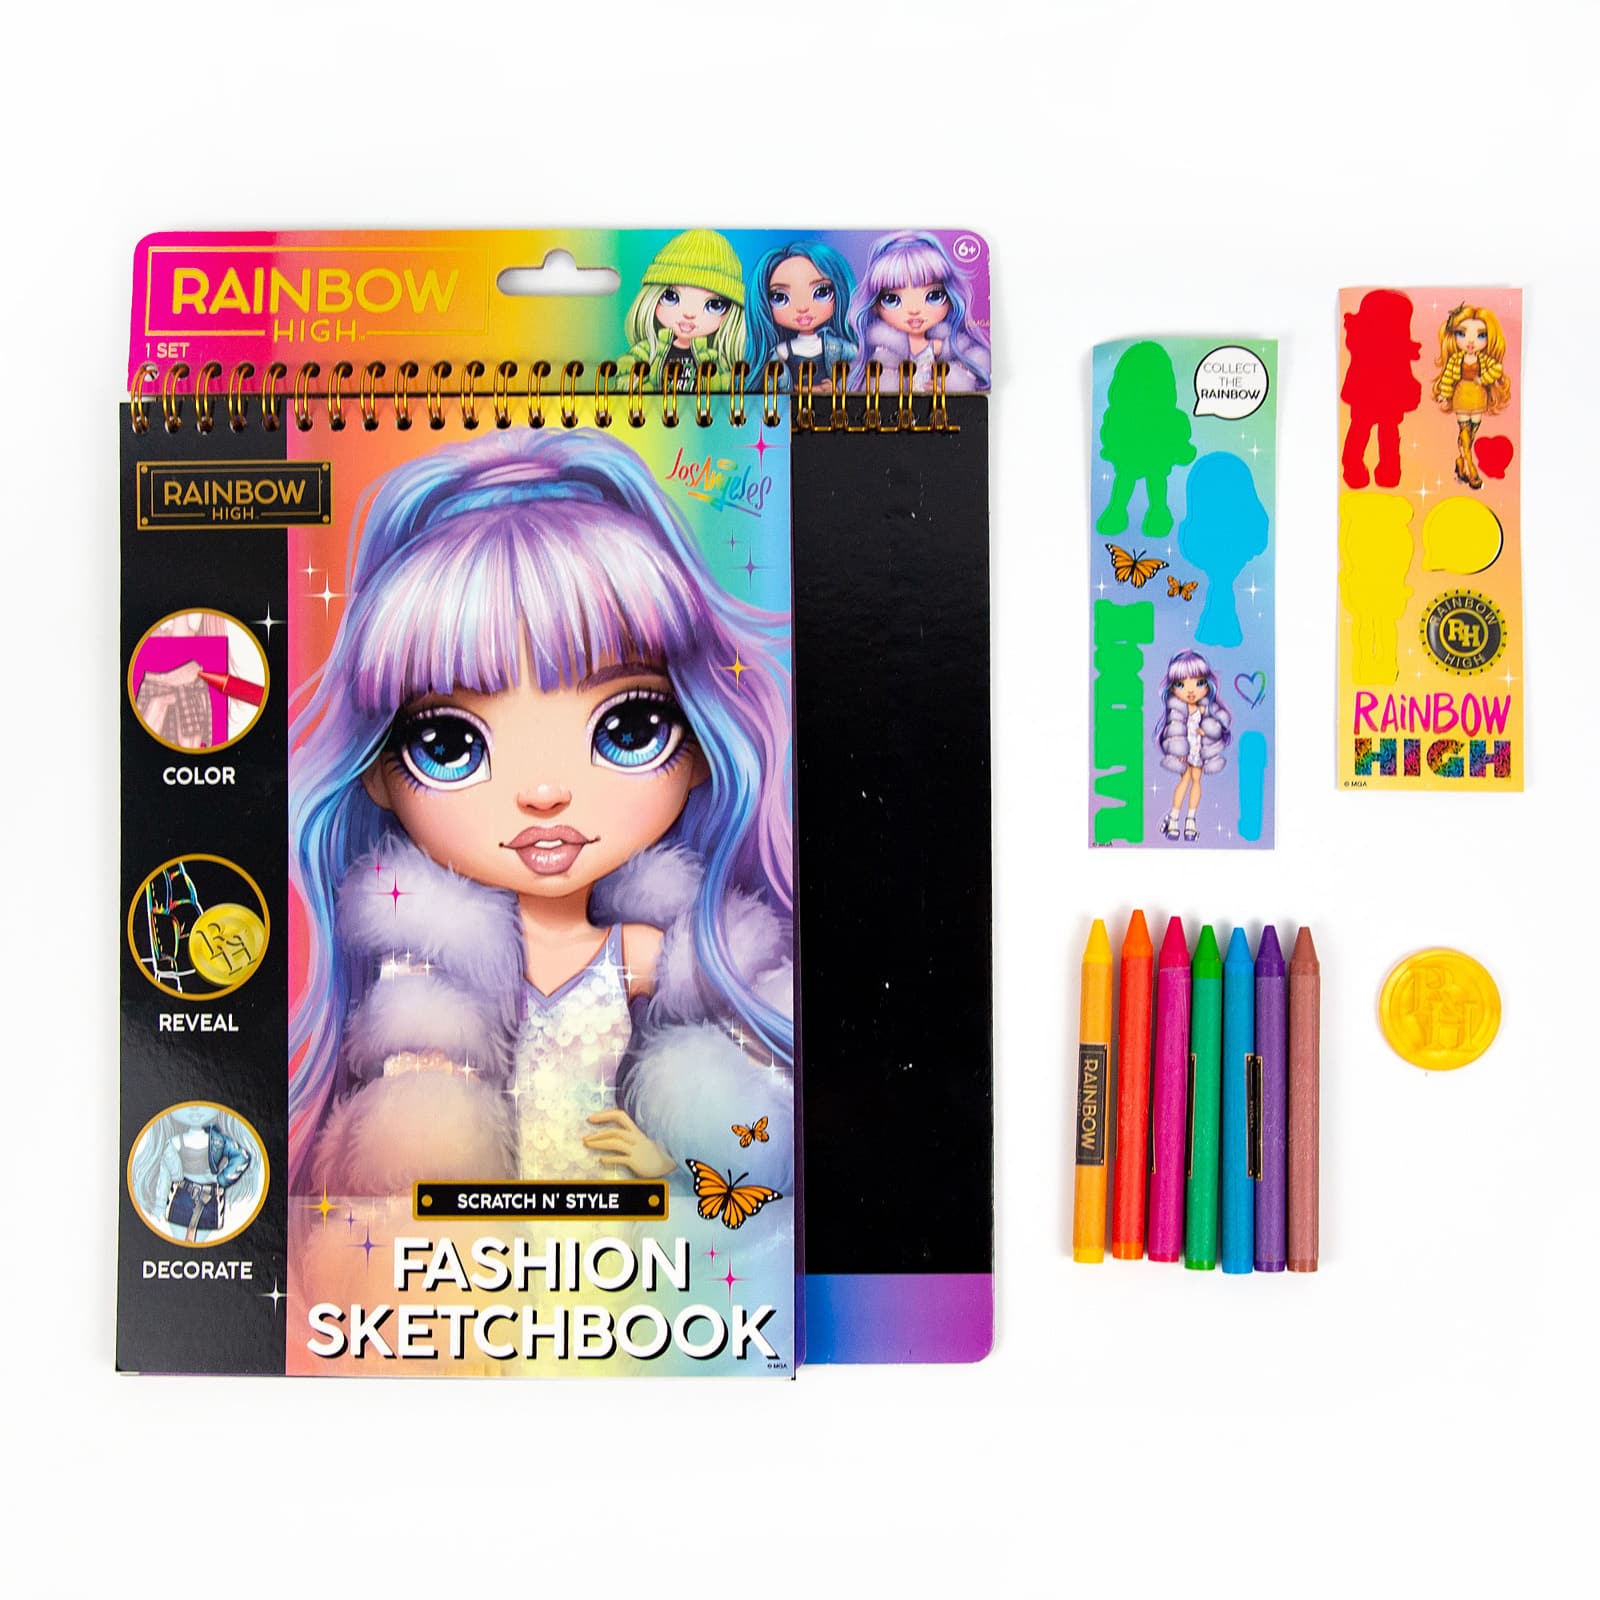 Rainbow High Scratch &#x27;n Style Fashion Sketchbook